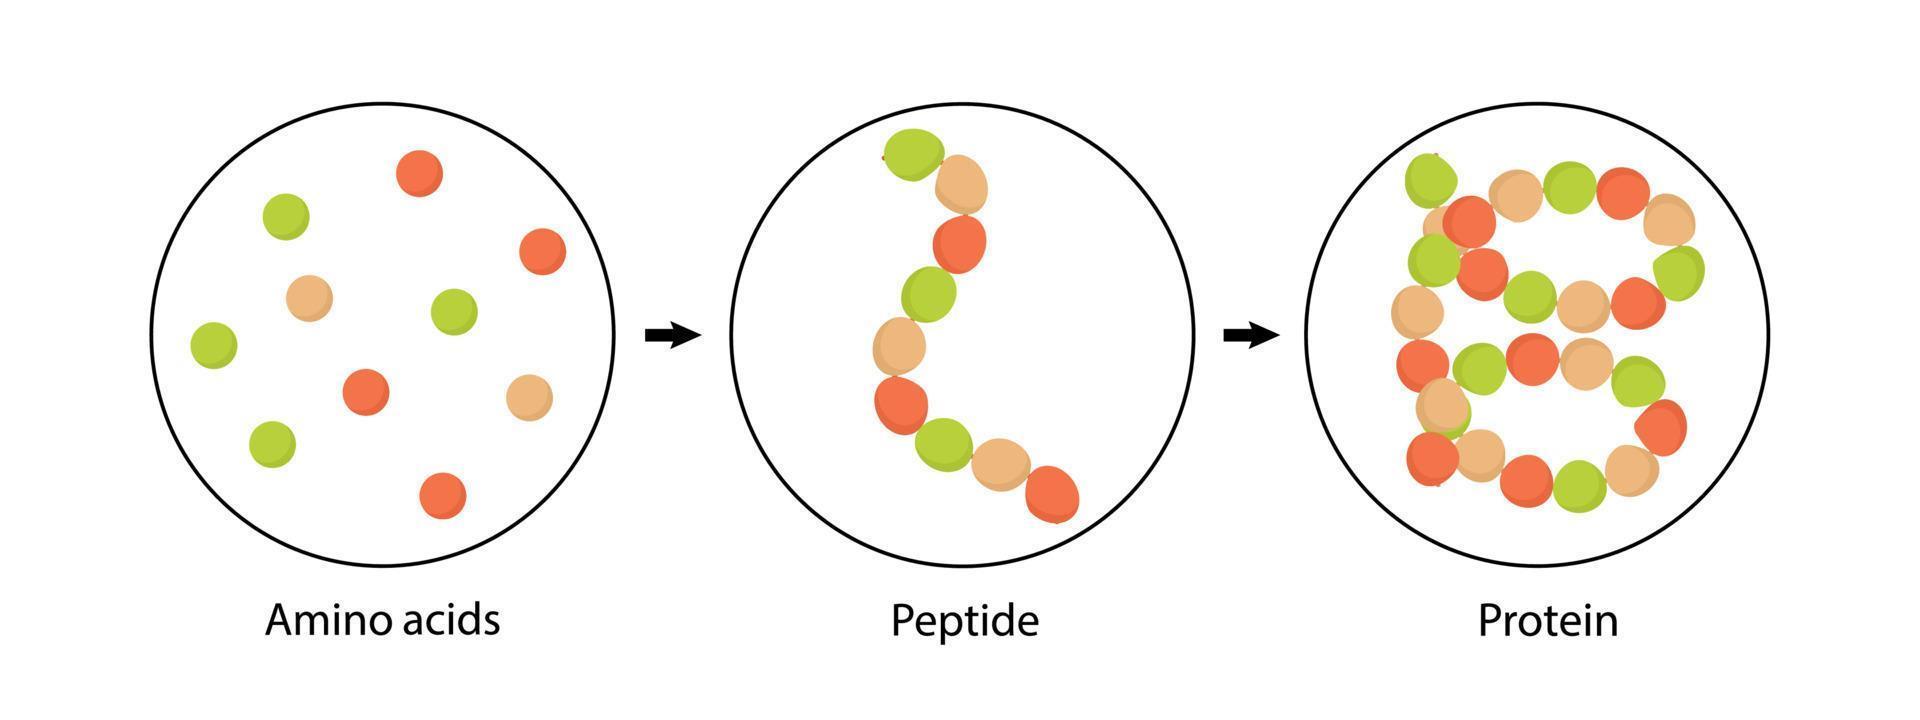 structure biochimique des acides aminés, des peptides et des protéines. illustration vectorielle. vecteur